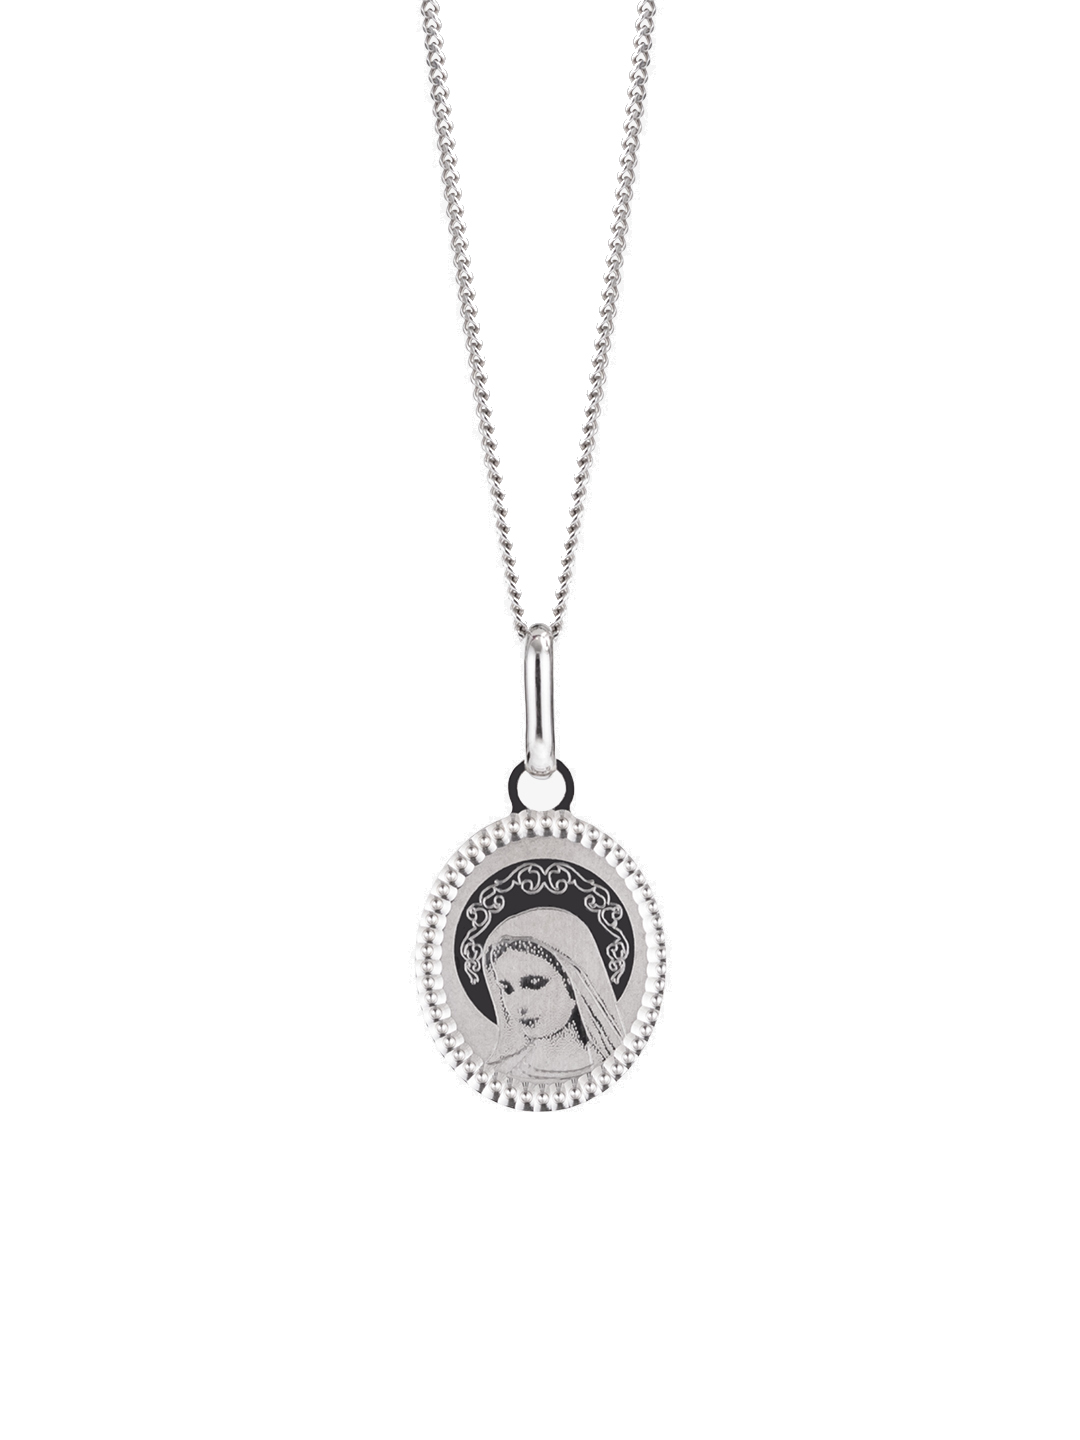 Preciosa Stříbrný náhrdelník s medailonkem Panna Marie 6154 00